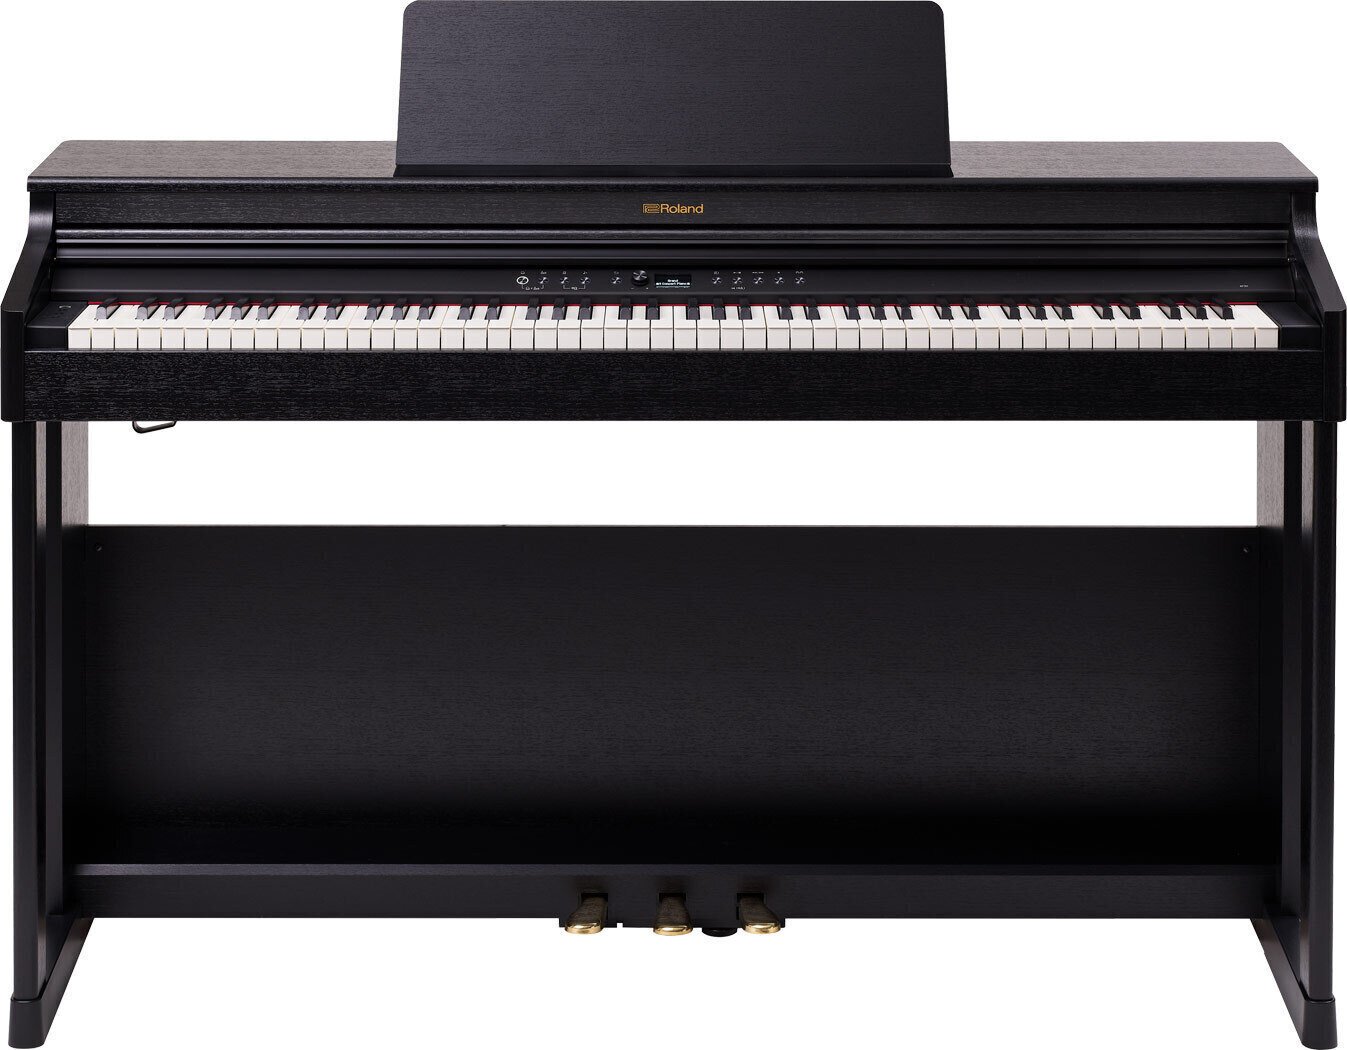 Digitale piano Roland RP701 Black Digitale piano